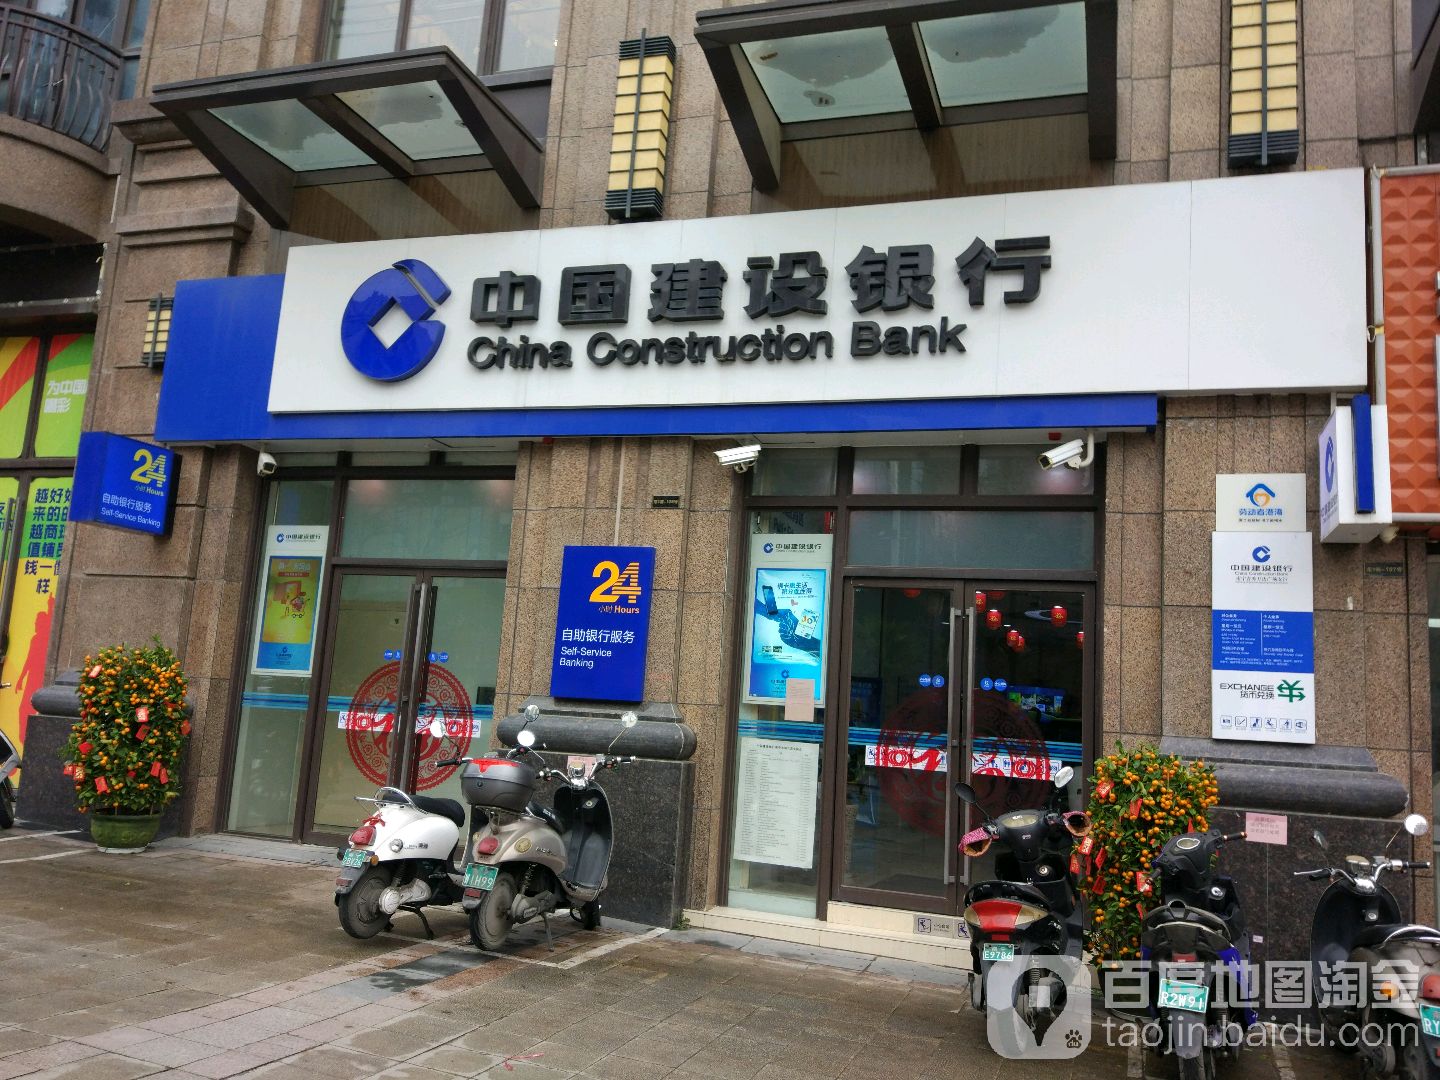 中國建設銀行24小時自助銀行服務(南寧青秀萬達廣場支行)